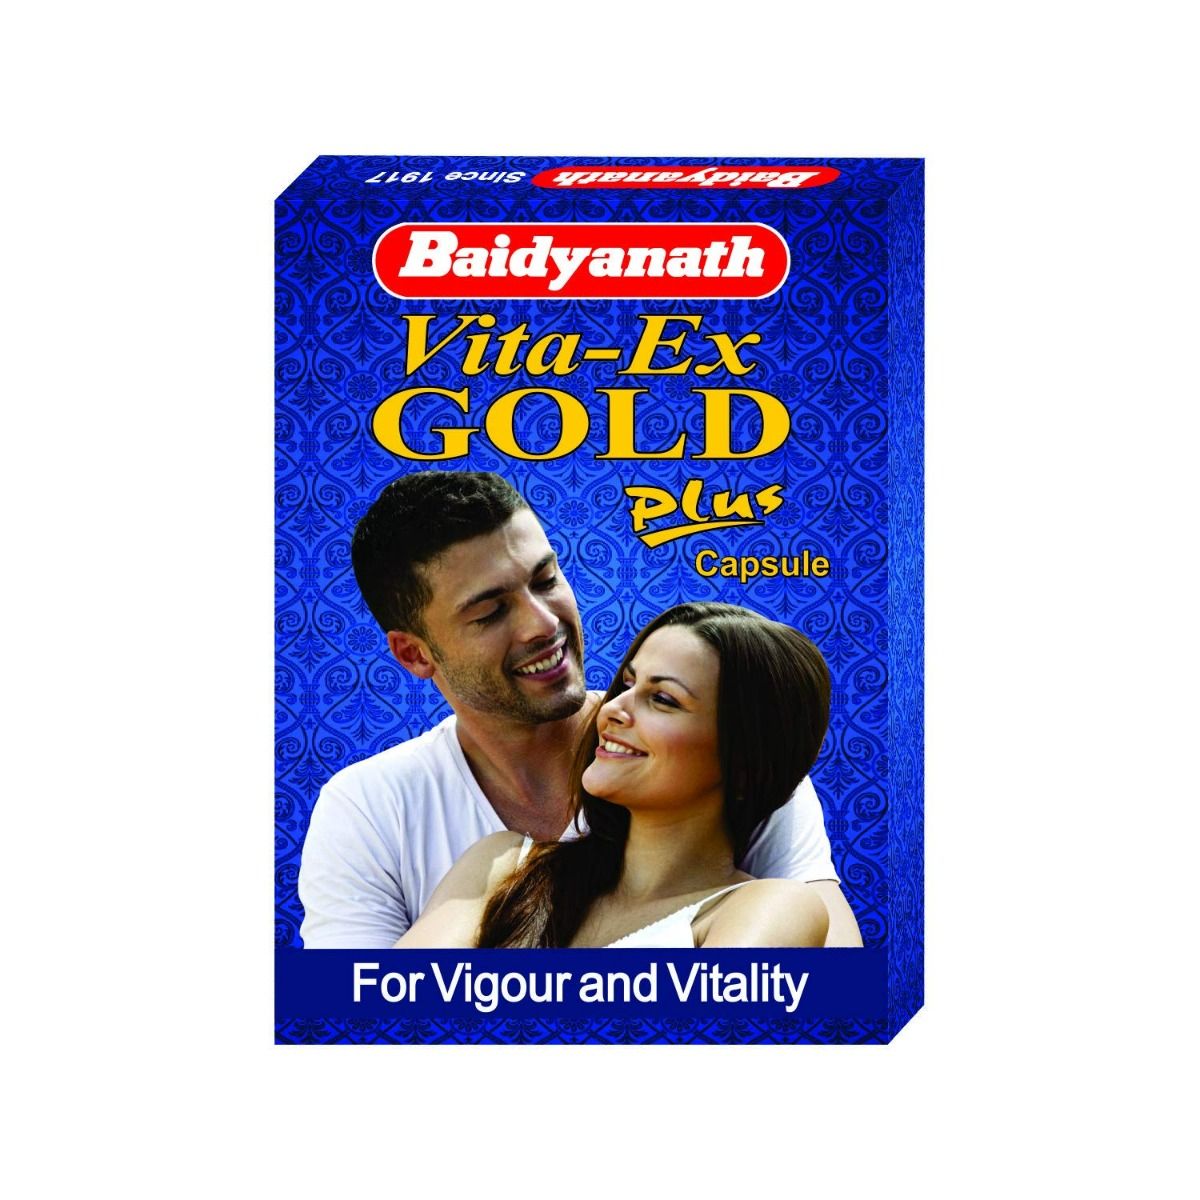 Baidyanath Vita-Ex Gold Plus, 10 Capsules, Pack of 1 